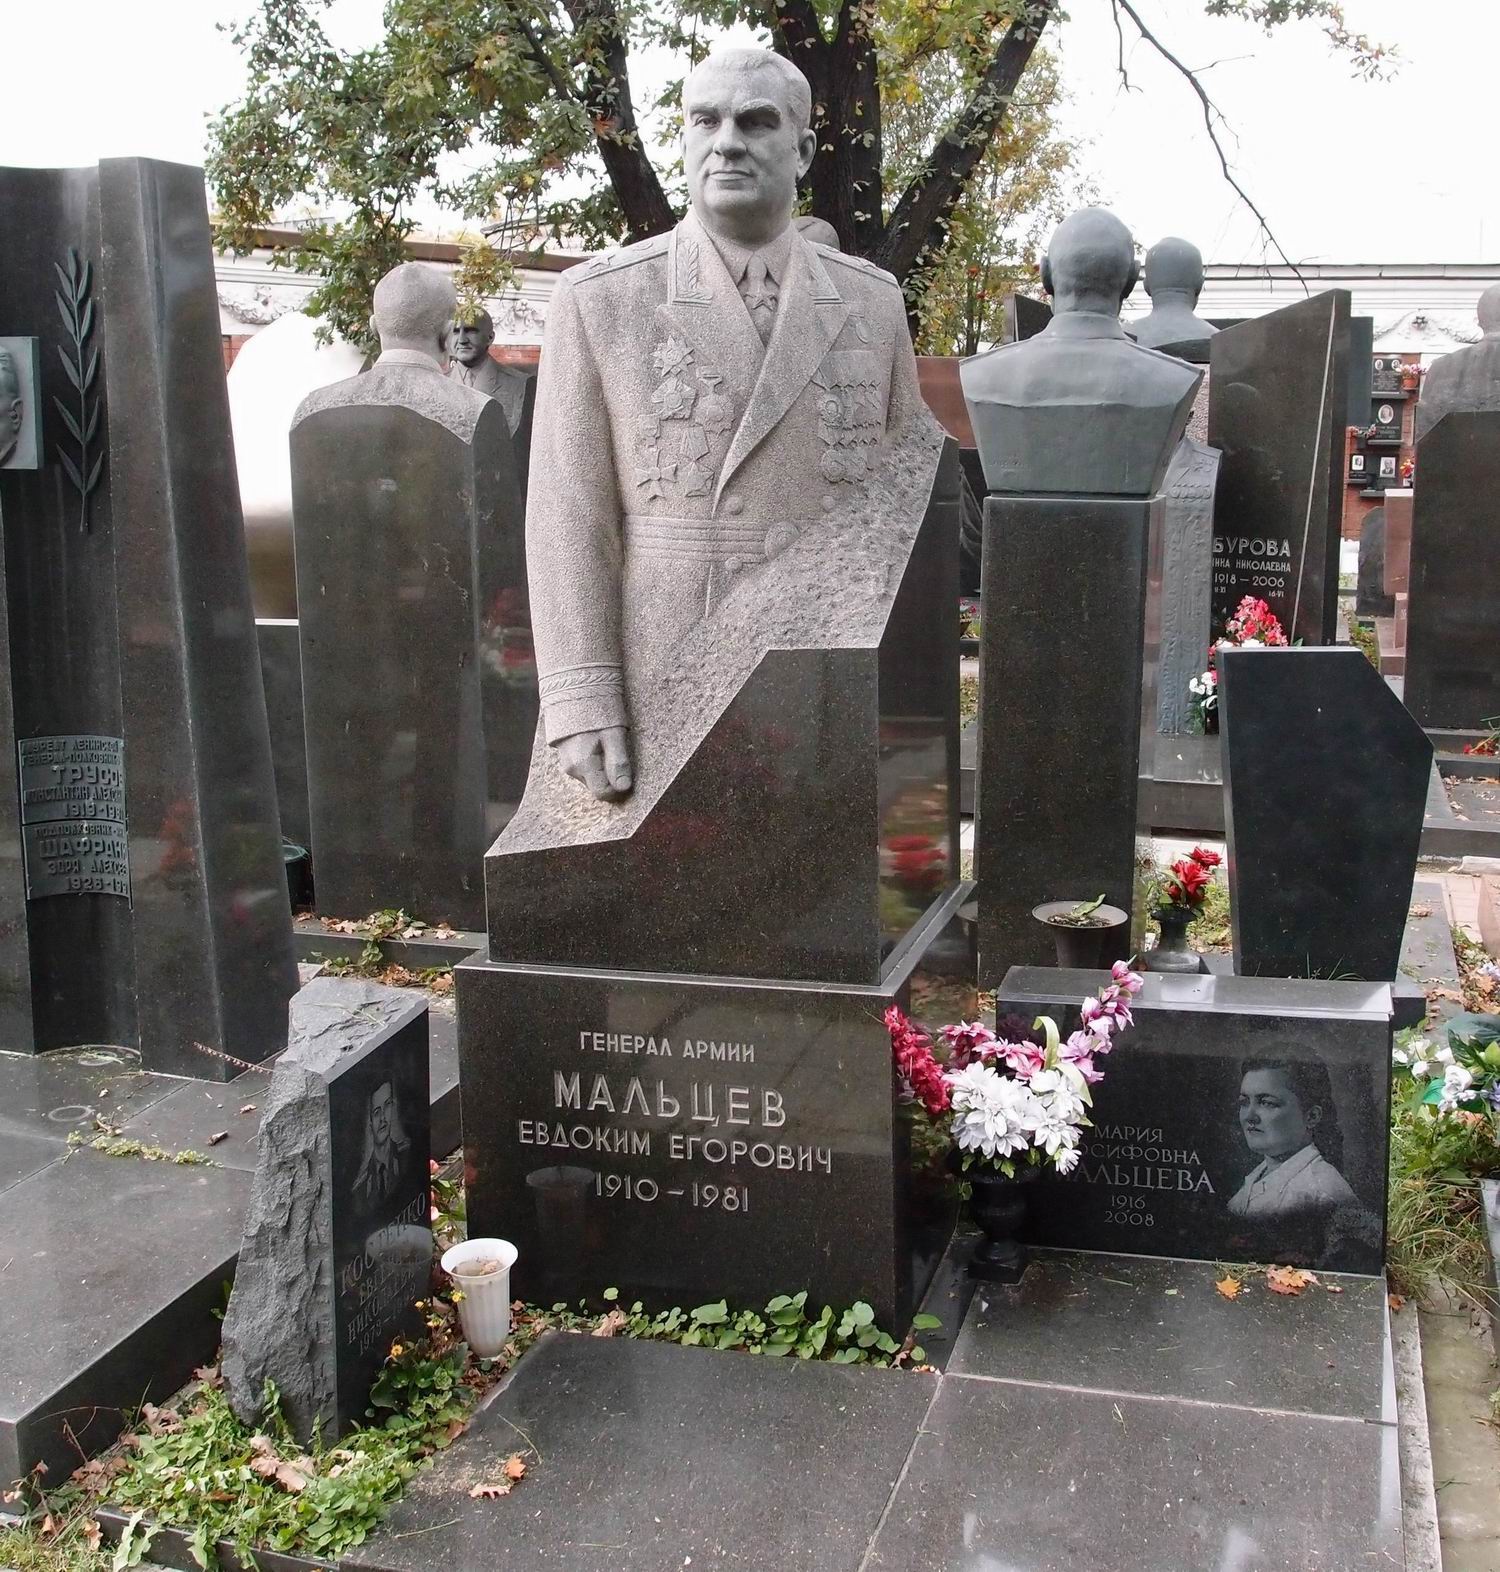 Памятник на могиле Мальцева Е.Е. (1910-1981), ск. Д.Никитин, арх. Е.Ефремов, на Новодевичьем кладбище (7-17-15).